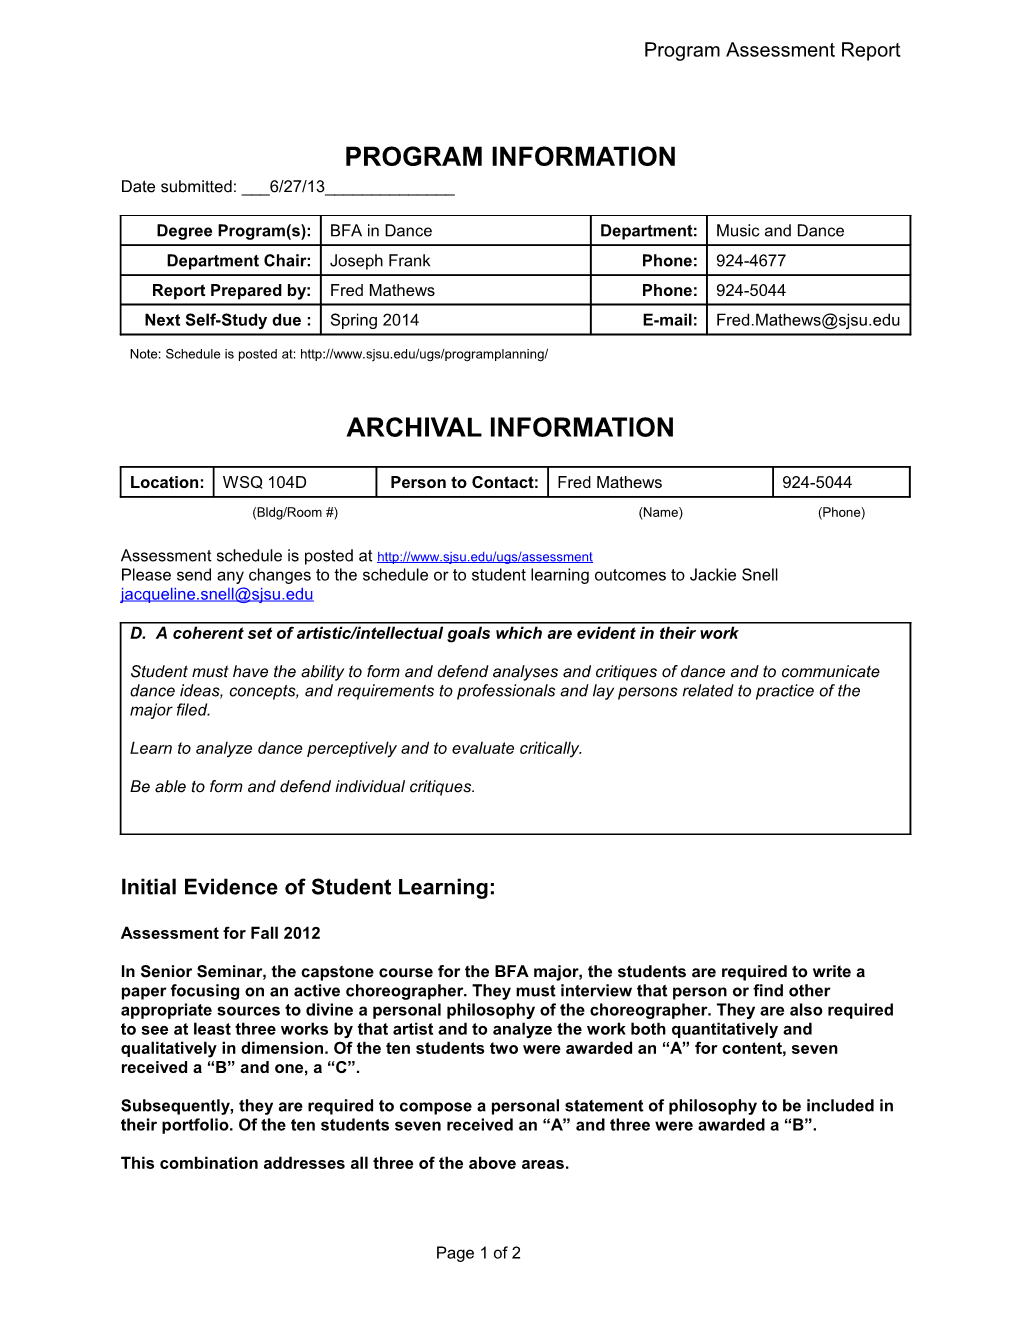 Fall 2007 Semester Program Assessment Report - ALTERNATE